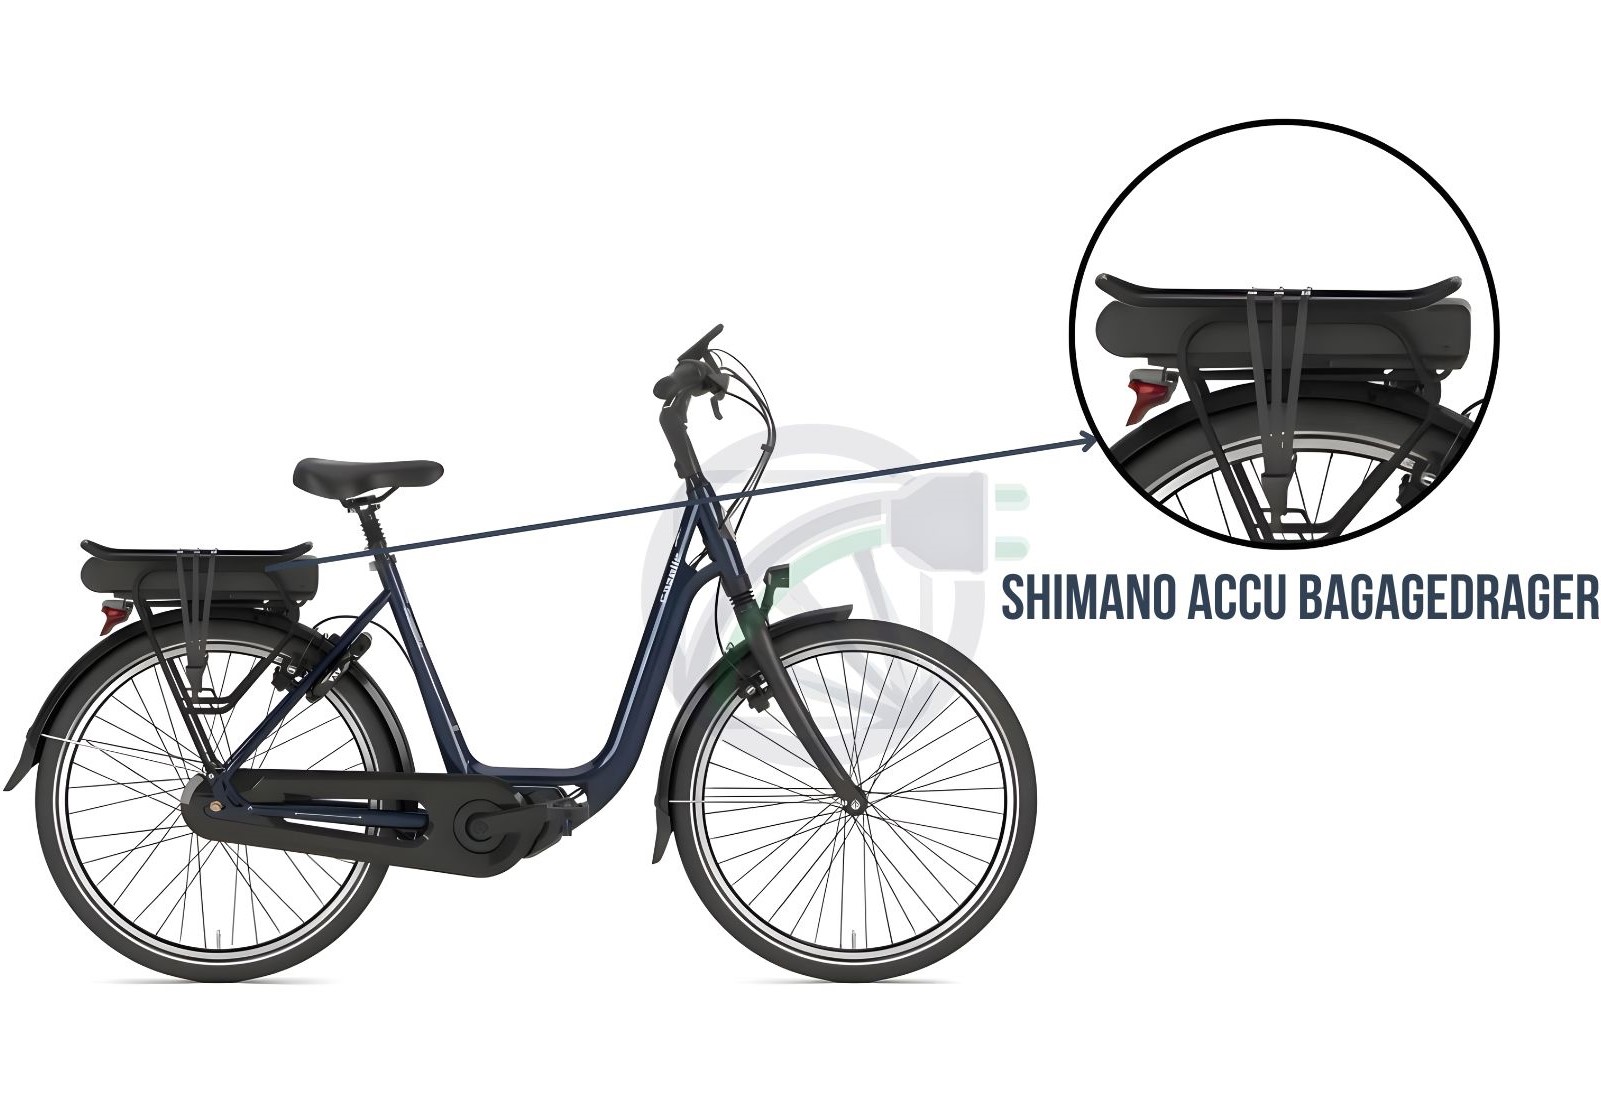 Fiets waarbij wordt uitgelicht, waar op de fiets, de accu bevestigd hoort te worden. Daarnaast wordt er beschreven welke Shimano batterij er in dit soort fietsen past.